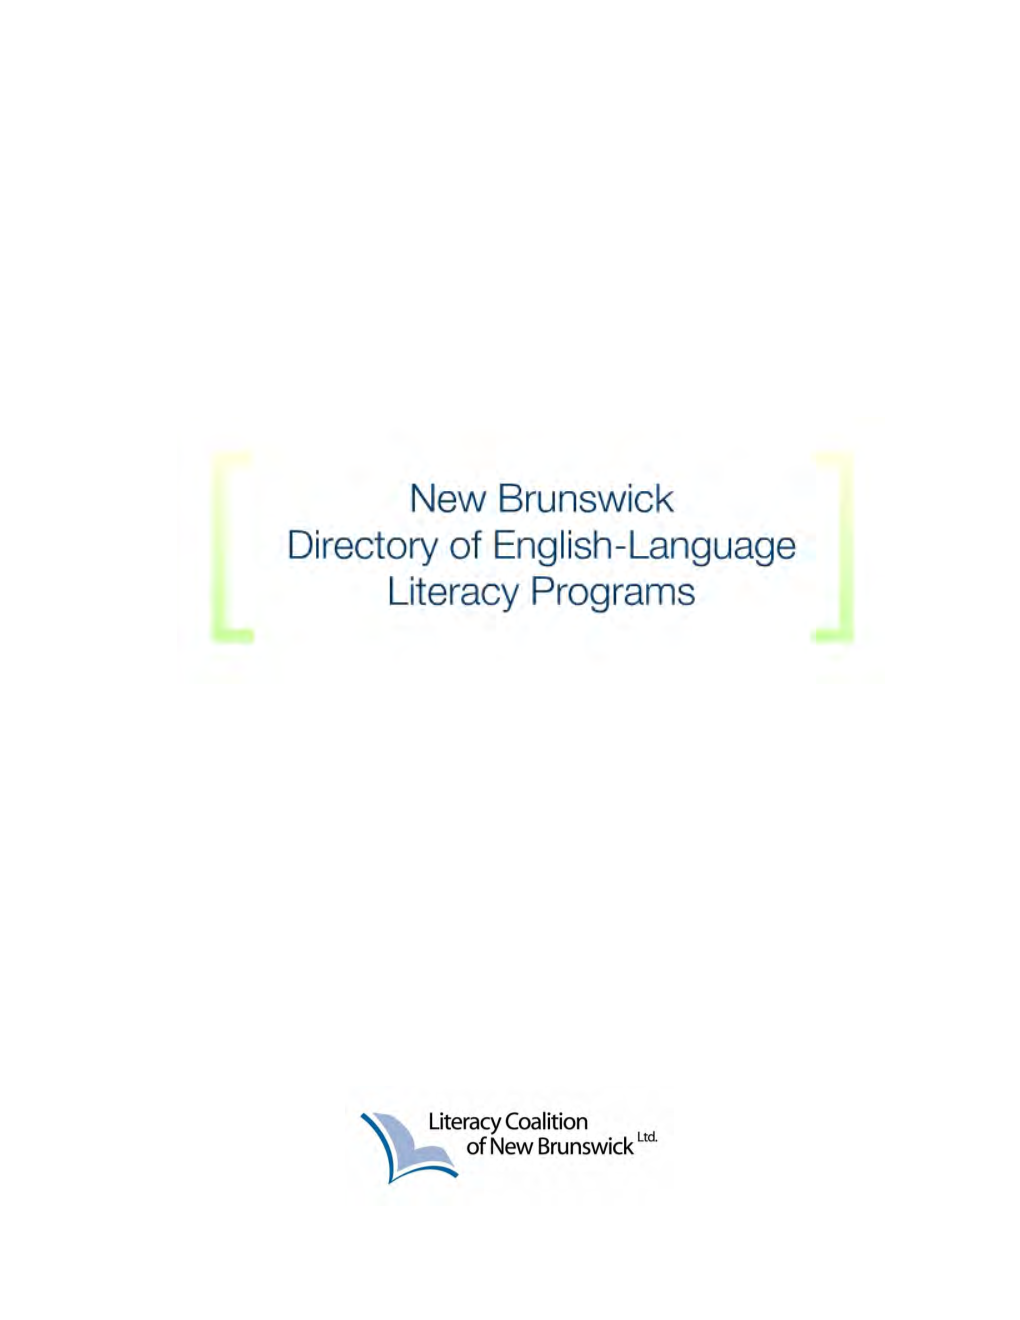 New Brunswick Directory of English-Language Literacy Programs